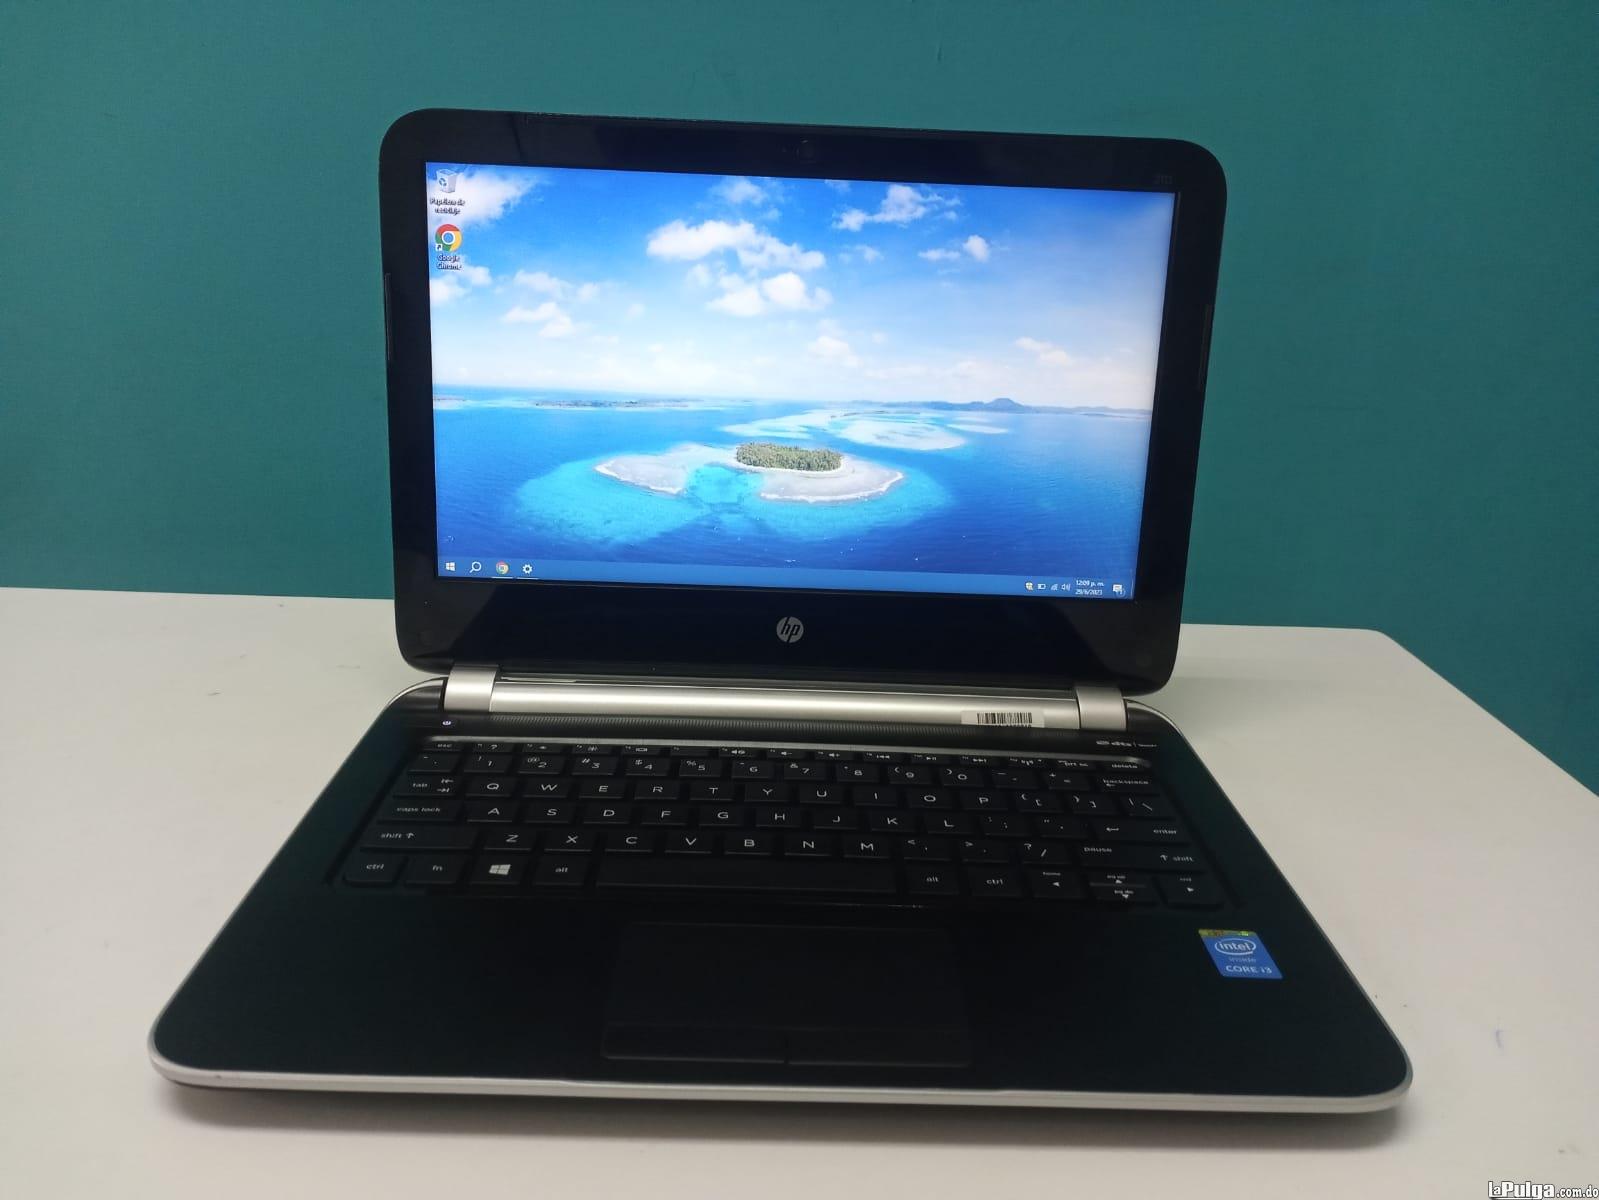 Laptop HP 210 G1 / 4th Gen Intel Core i3 / 4GB DDR3 / 120GB SSD Foto 7161769-2.jpg